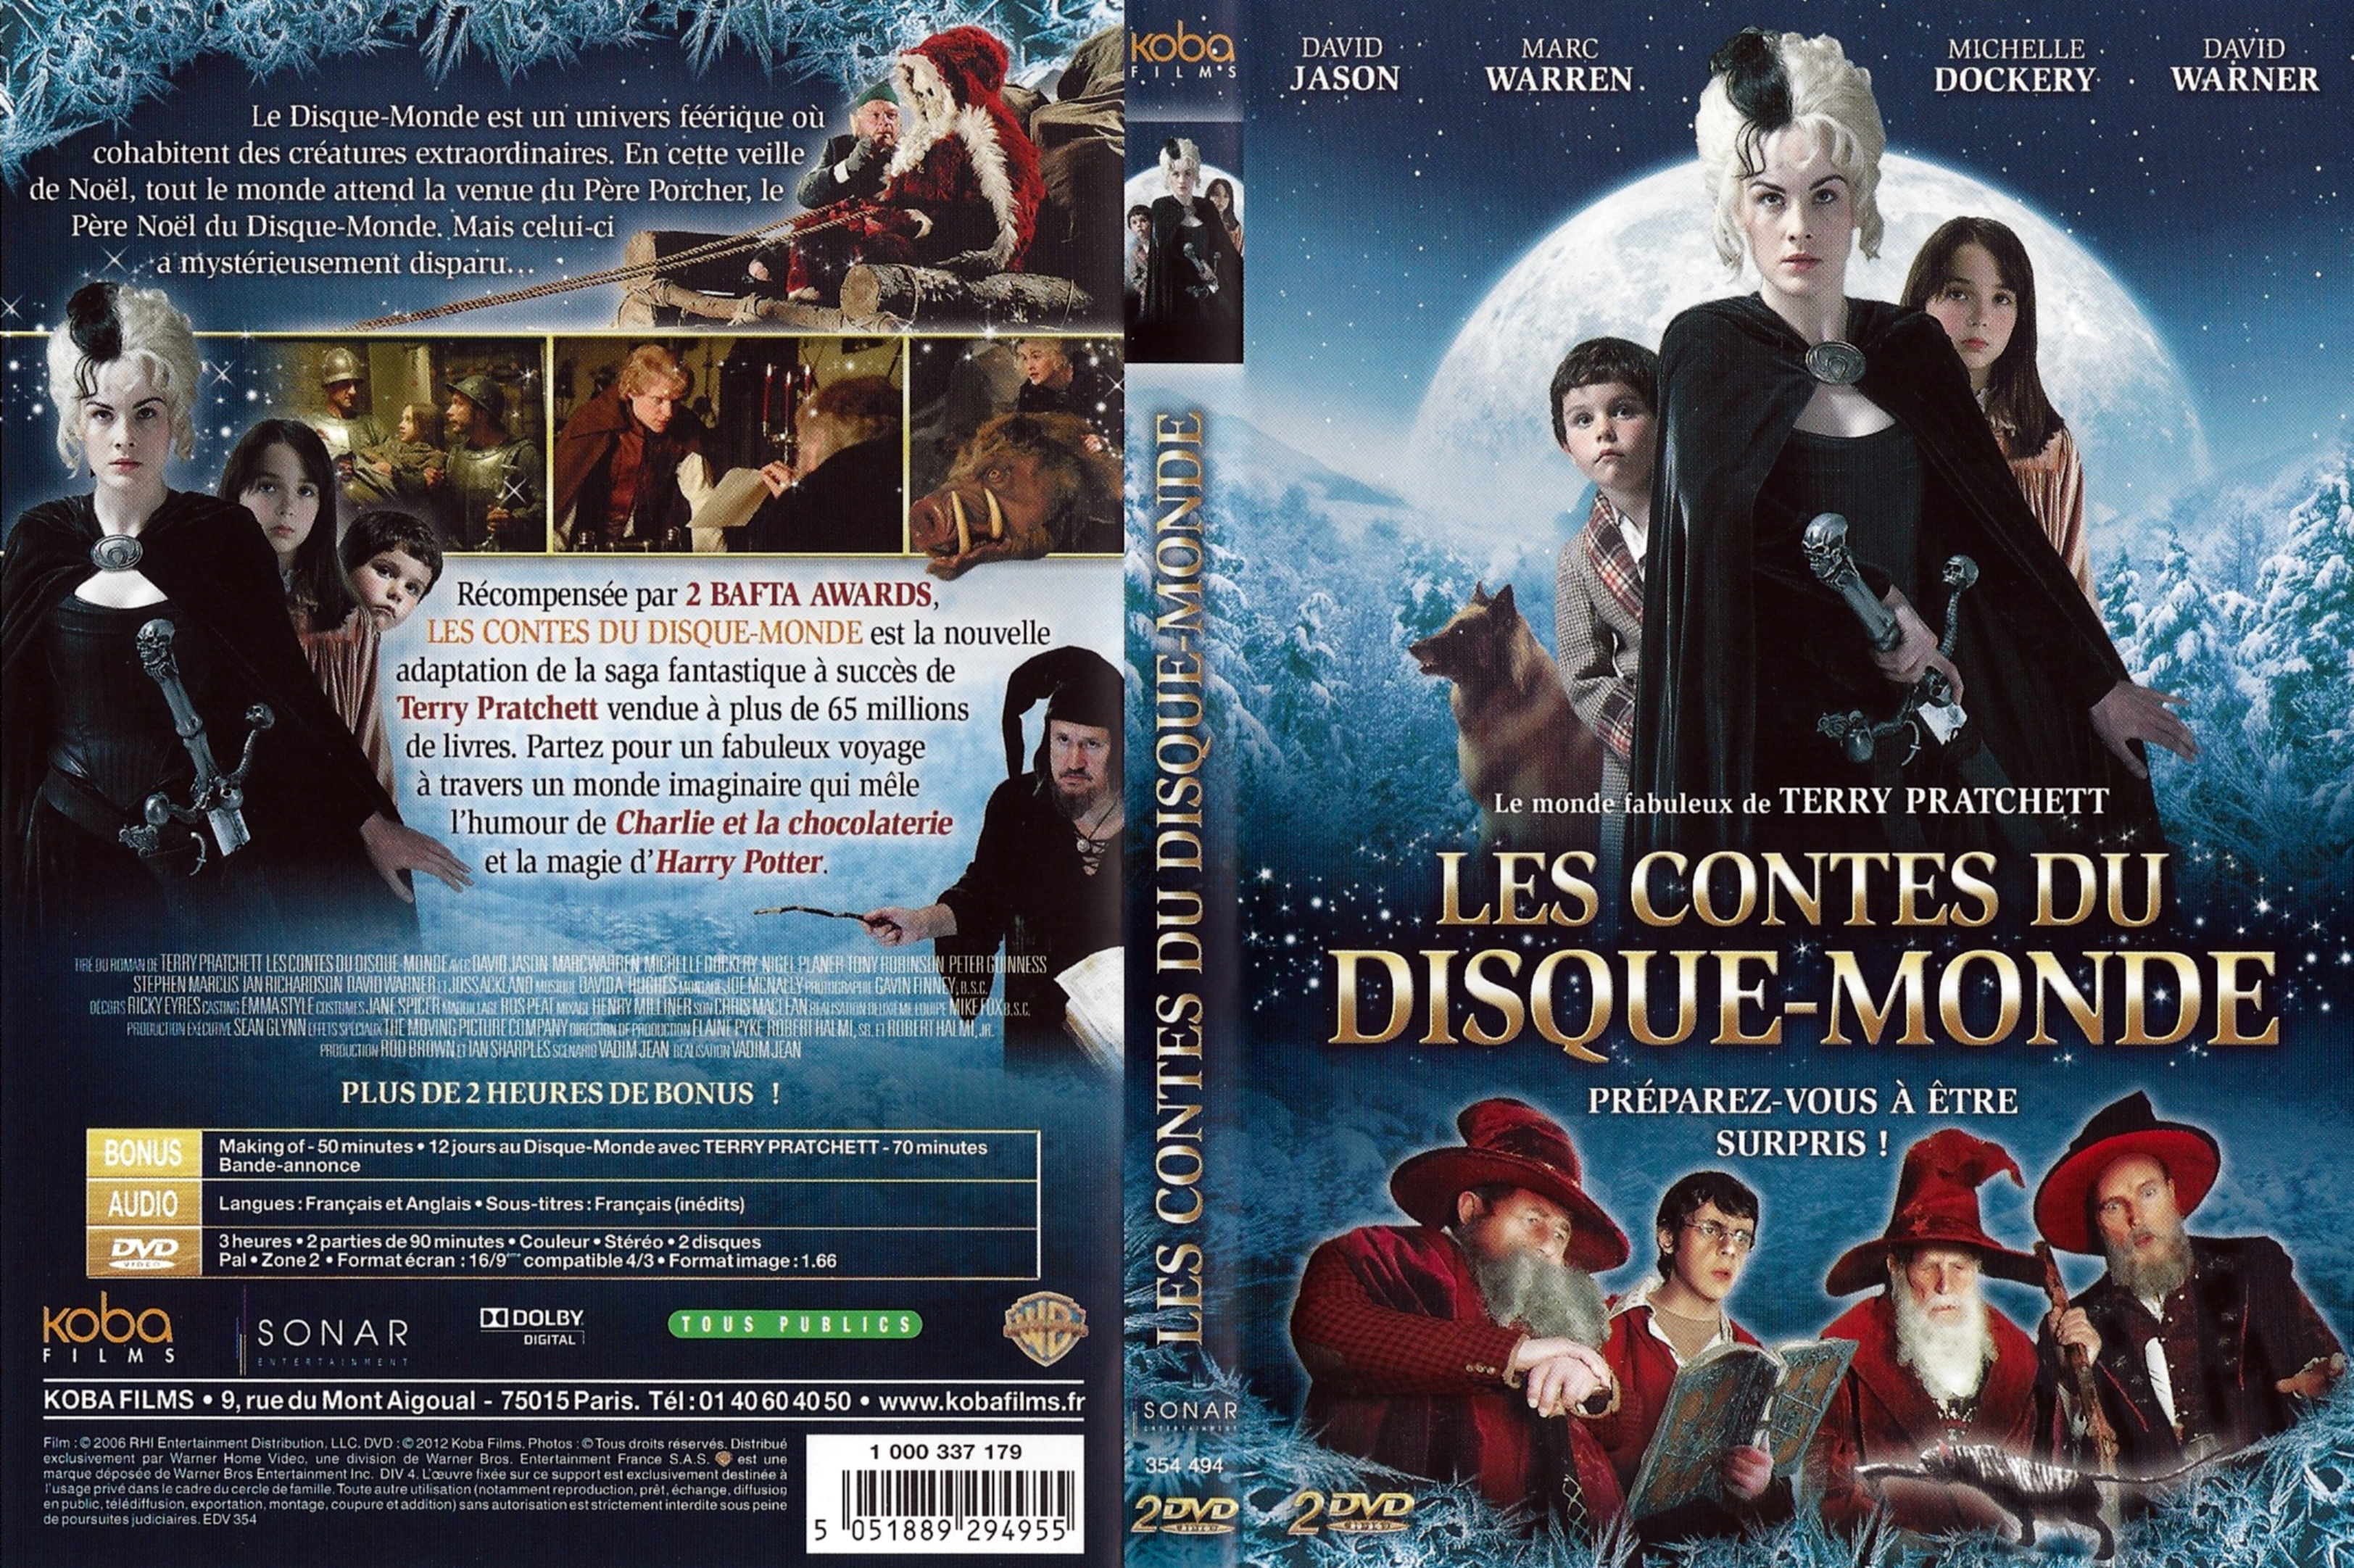 Jaquette DVD Les contes du disque-monde